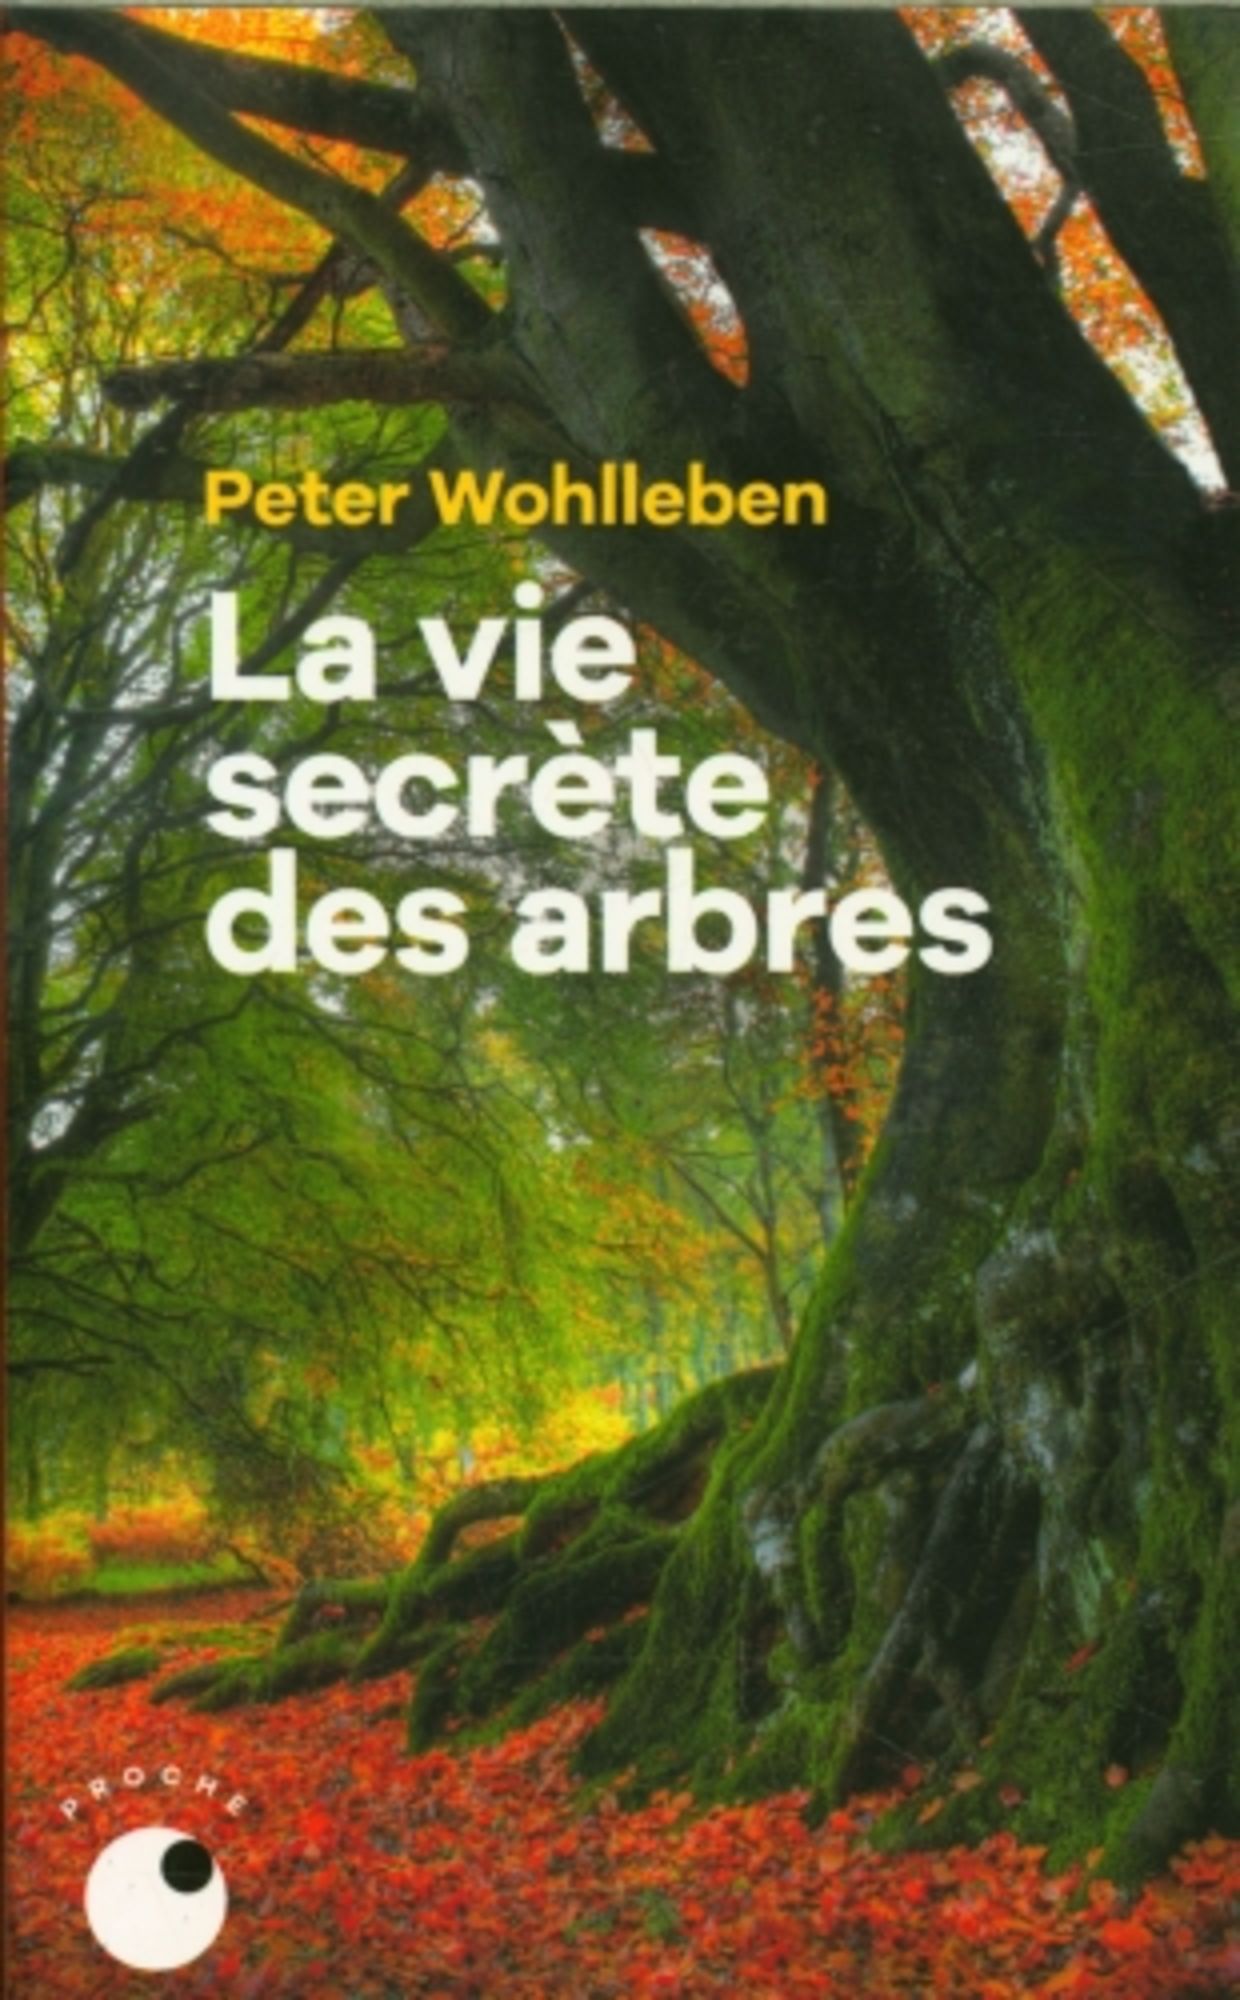 La Vie secrète des arbres' von 'Peter Wohlleben' - 'Taschenbuch